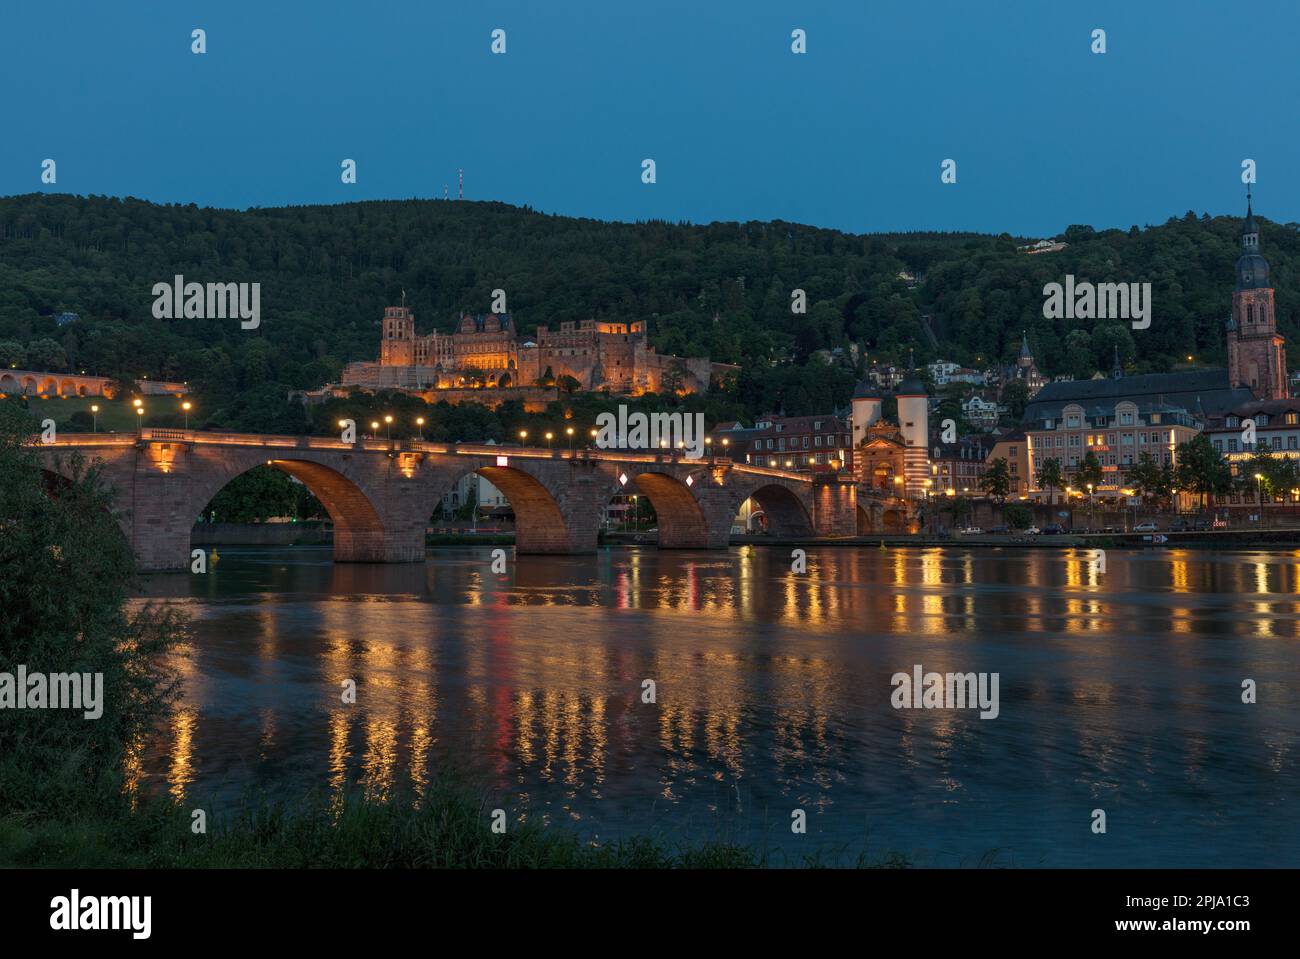 Il castello di Heidelberg su Konigstuhl, un edificio gotico rinascimentale nella valle di Neckar, si affaccia sul Ponte Vecchio e sul fiume Neckar. Heidelberg. Foto Stock